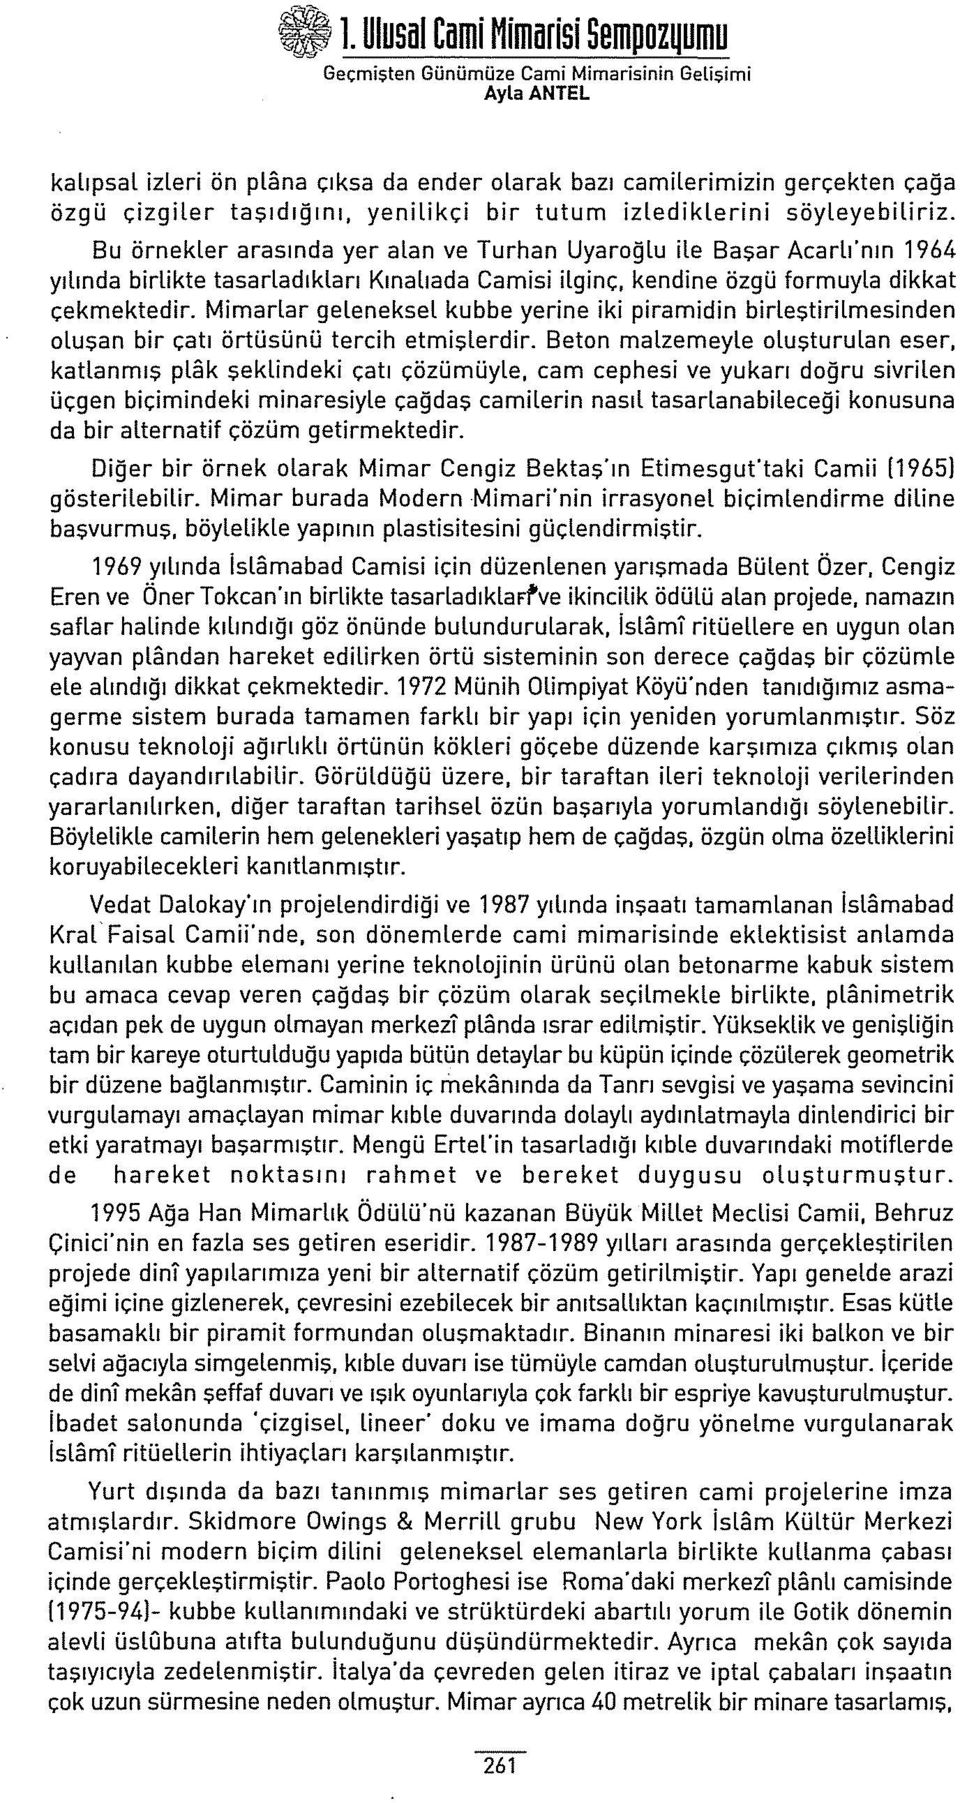 Bu örnekler arasında yer alan ve Turhan Uyaroğlu ile Başar Acarlı"nın 1964 yılında birlikte tasarladıkları Kınalıada Camisi ilginç, kendine özgü formuyla dikkat çekmektedir.